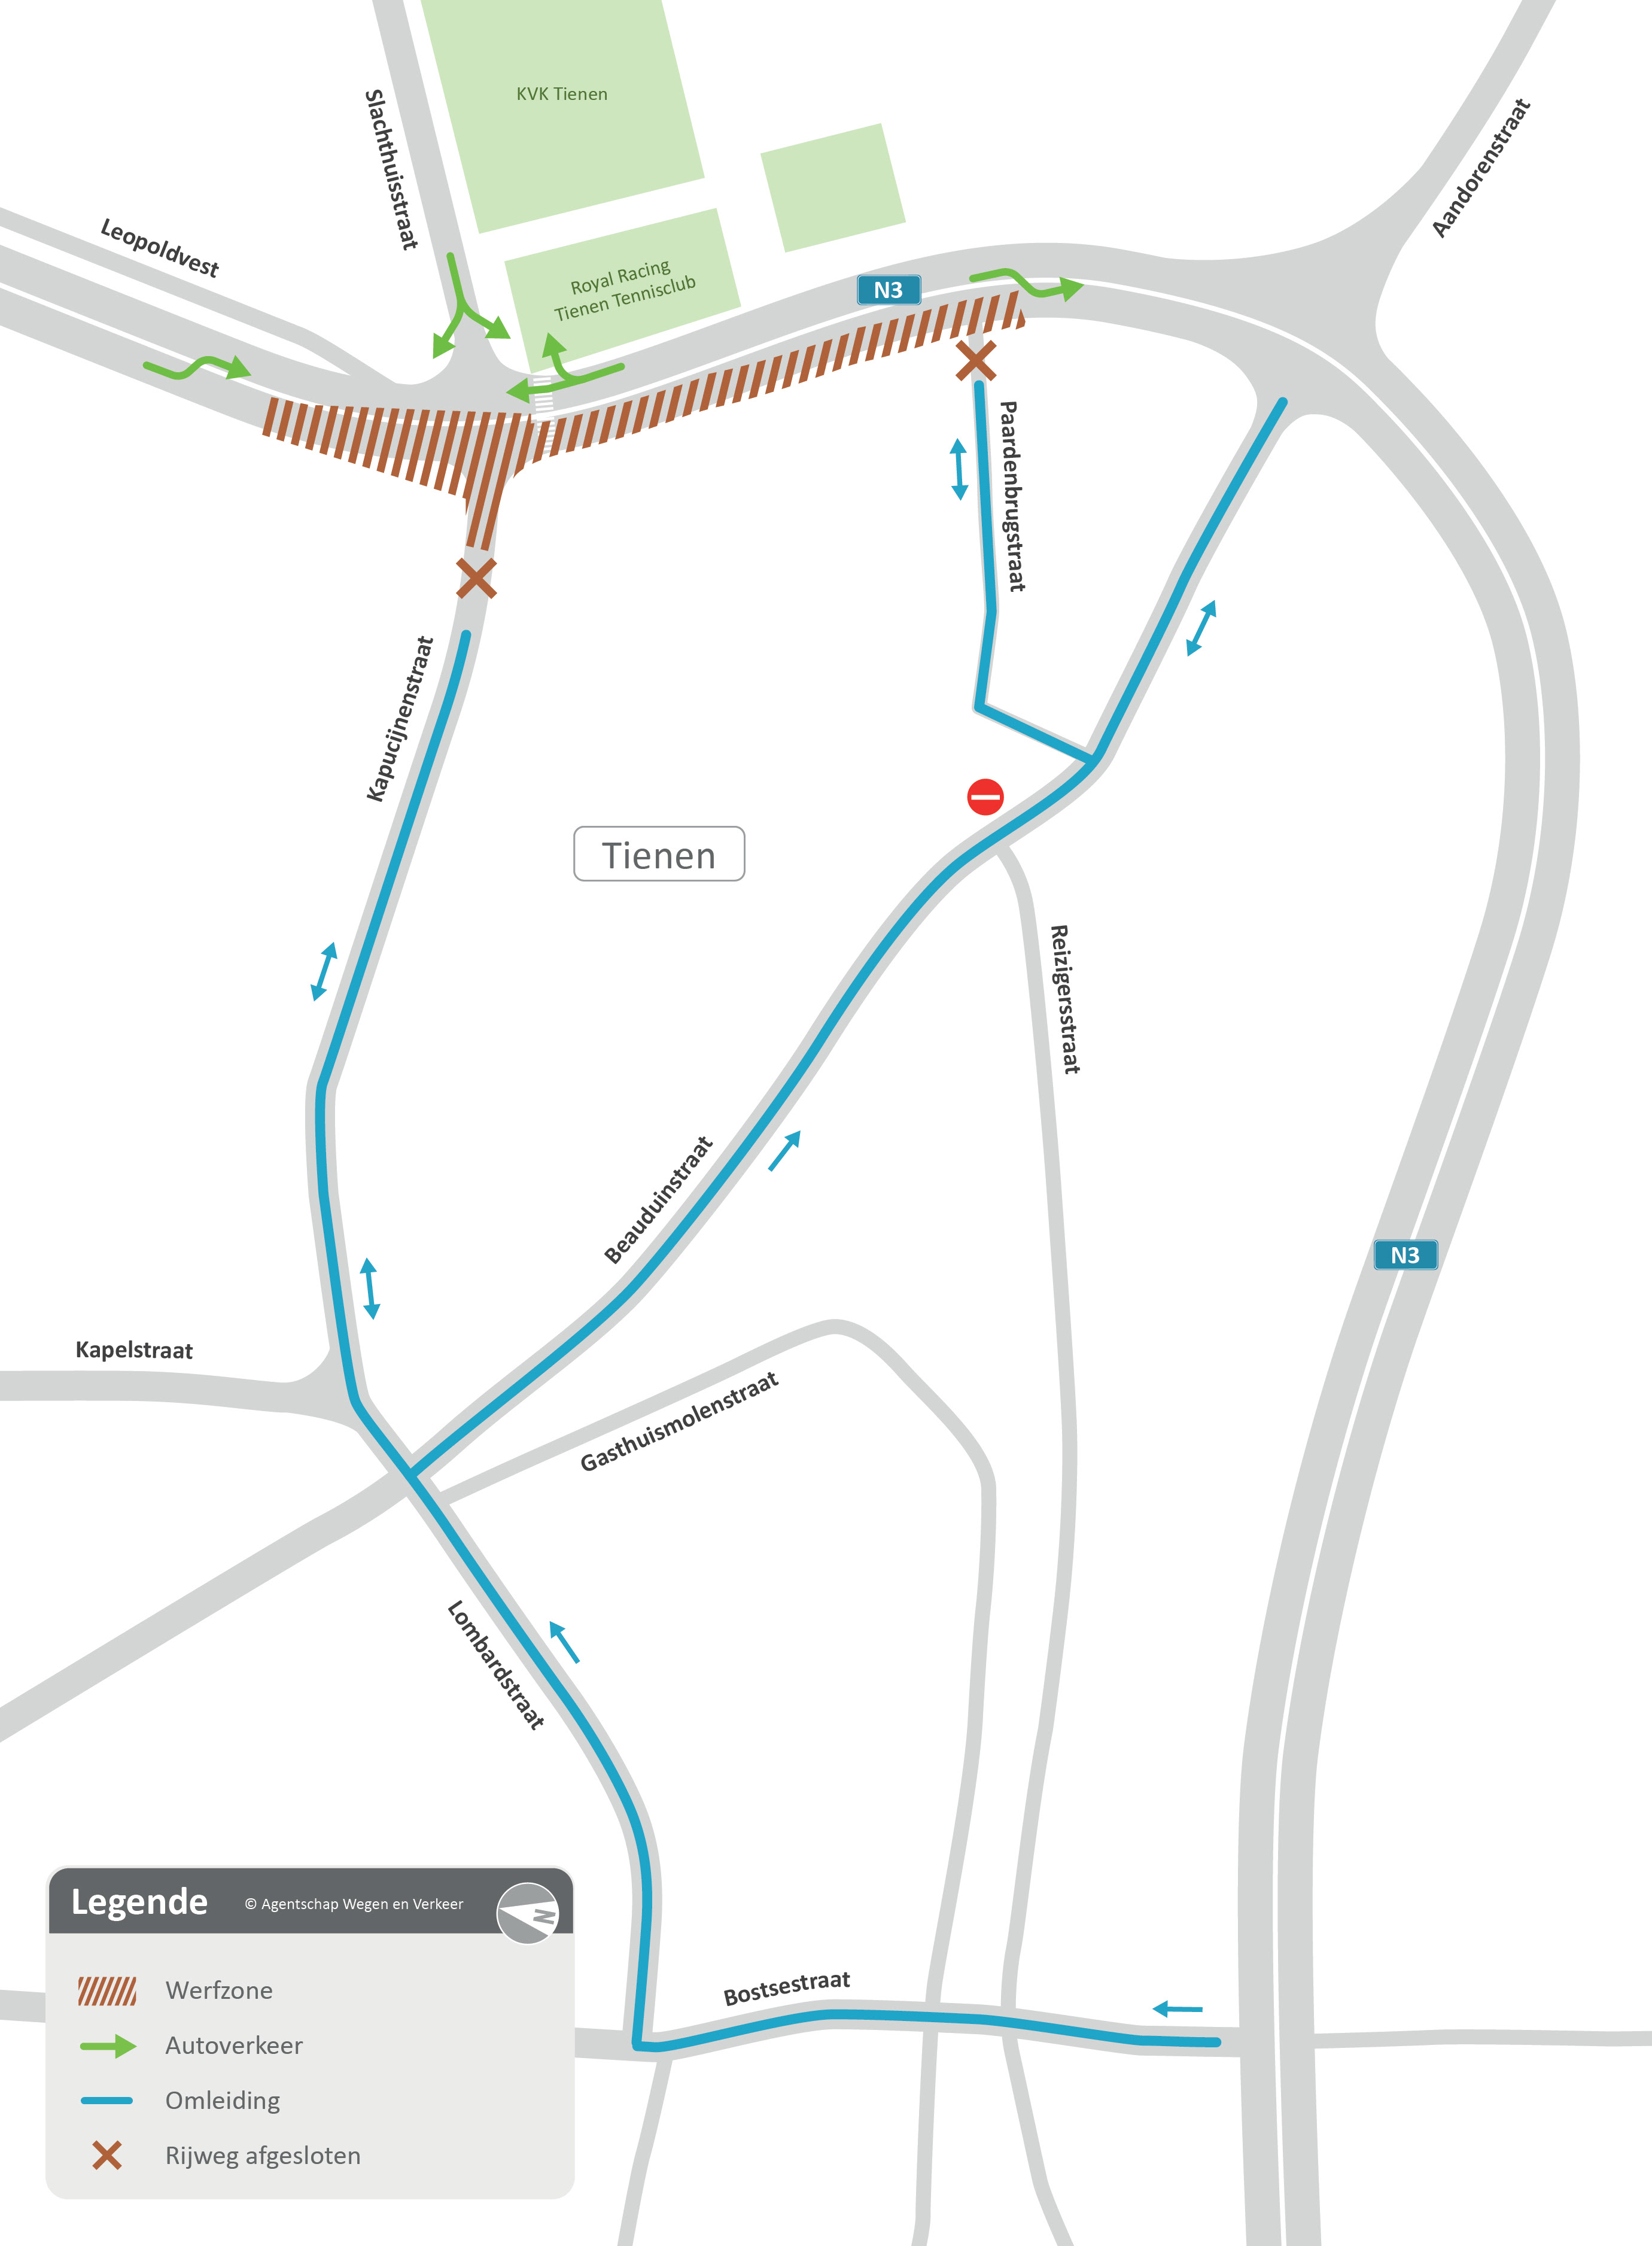 Bergévest/Paardenbrugstraat afgewerkt tegen midden maart 2020